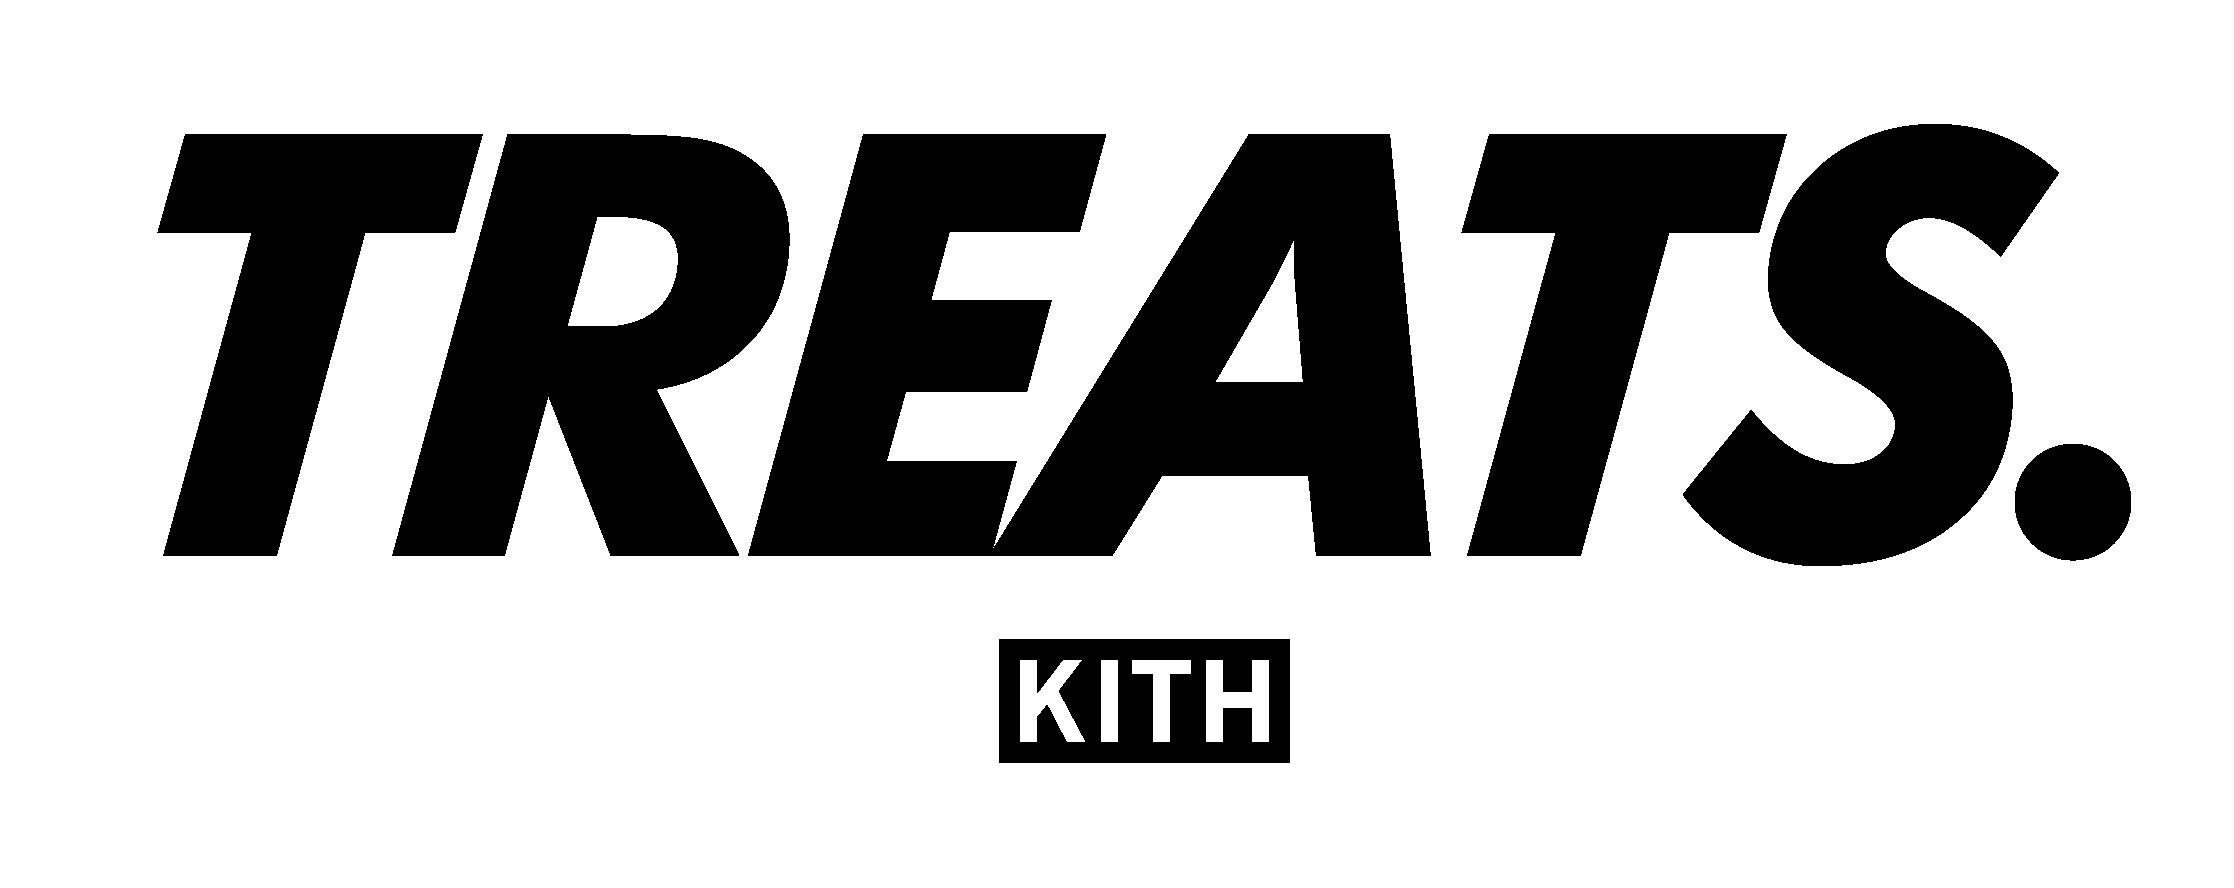 kith-treats